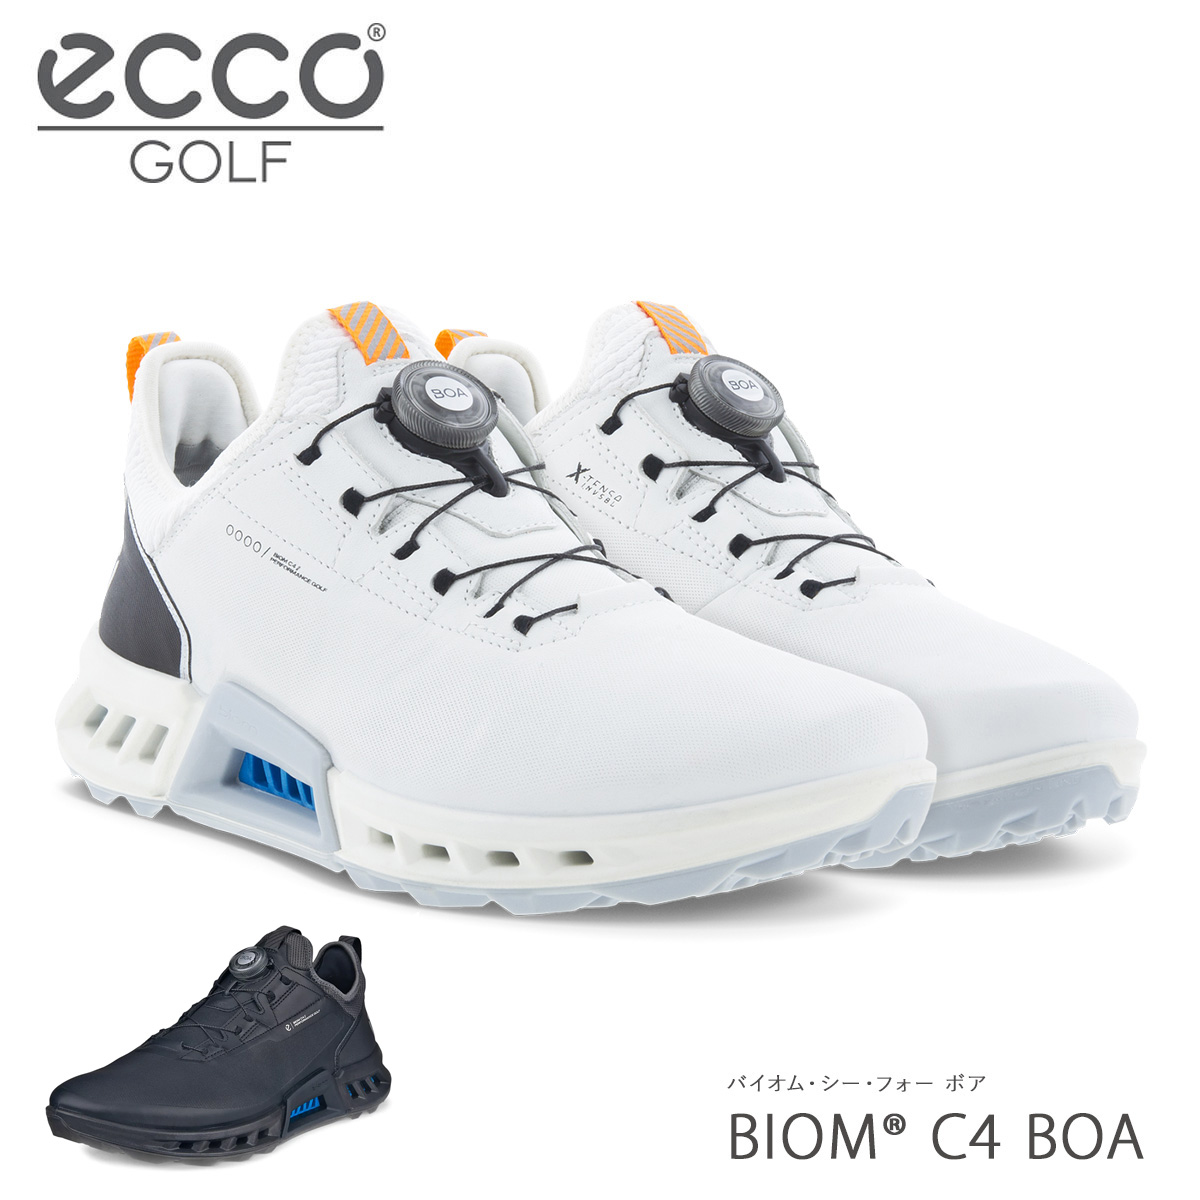 エコー ゴルフ シューズ バイオム シー フォー ボア スパイクレス メンズ 男性用 130424 ECCO BIOM C4 BOA リール  ダイヤル式 靴 ゴアテックス 防水 透湿